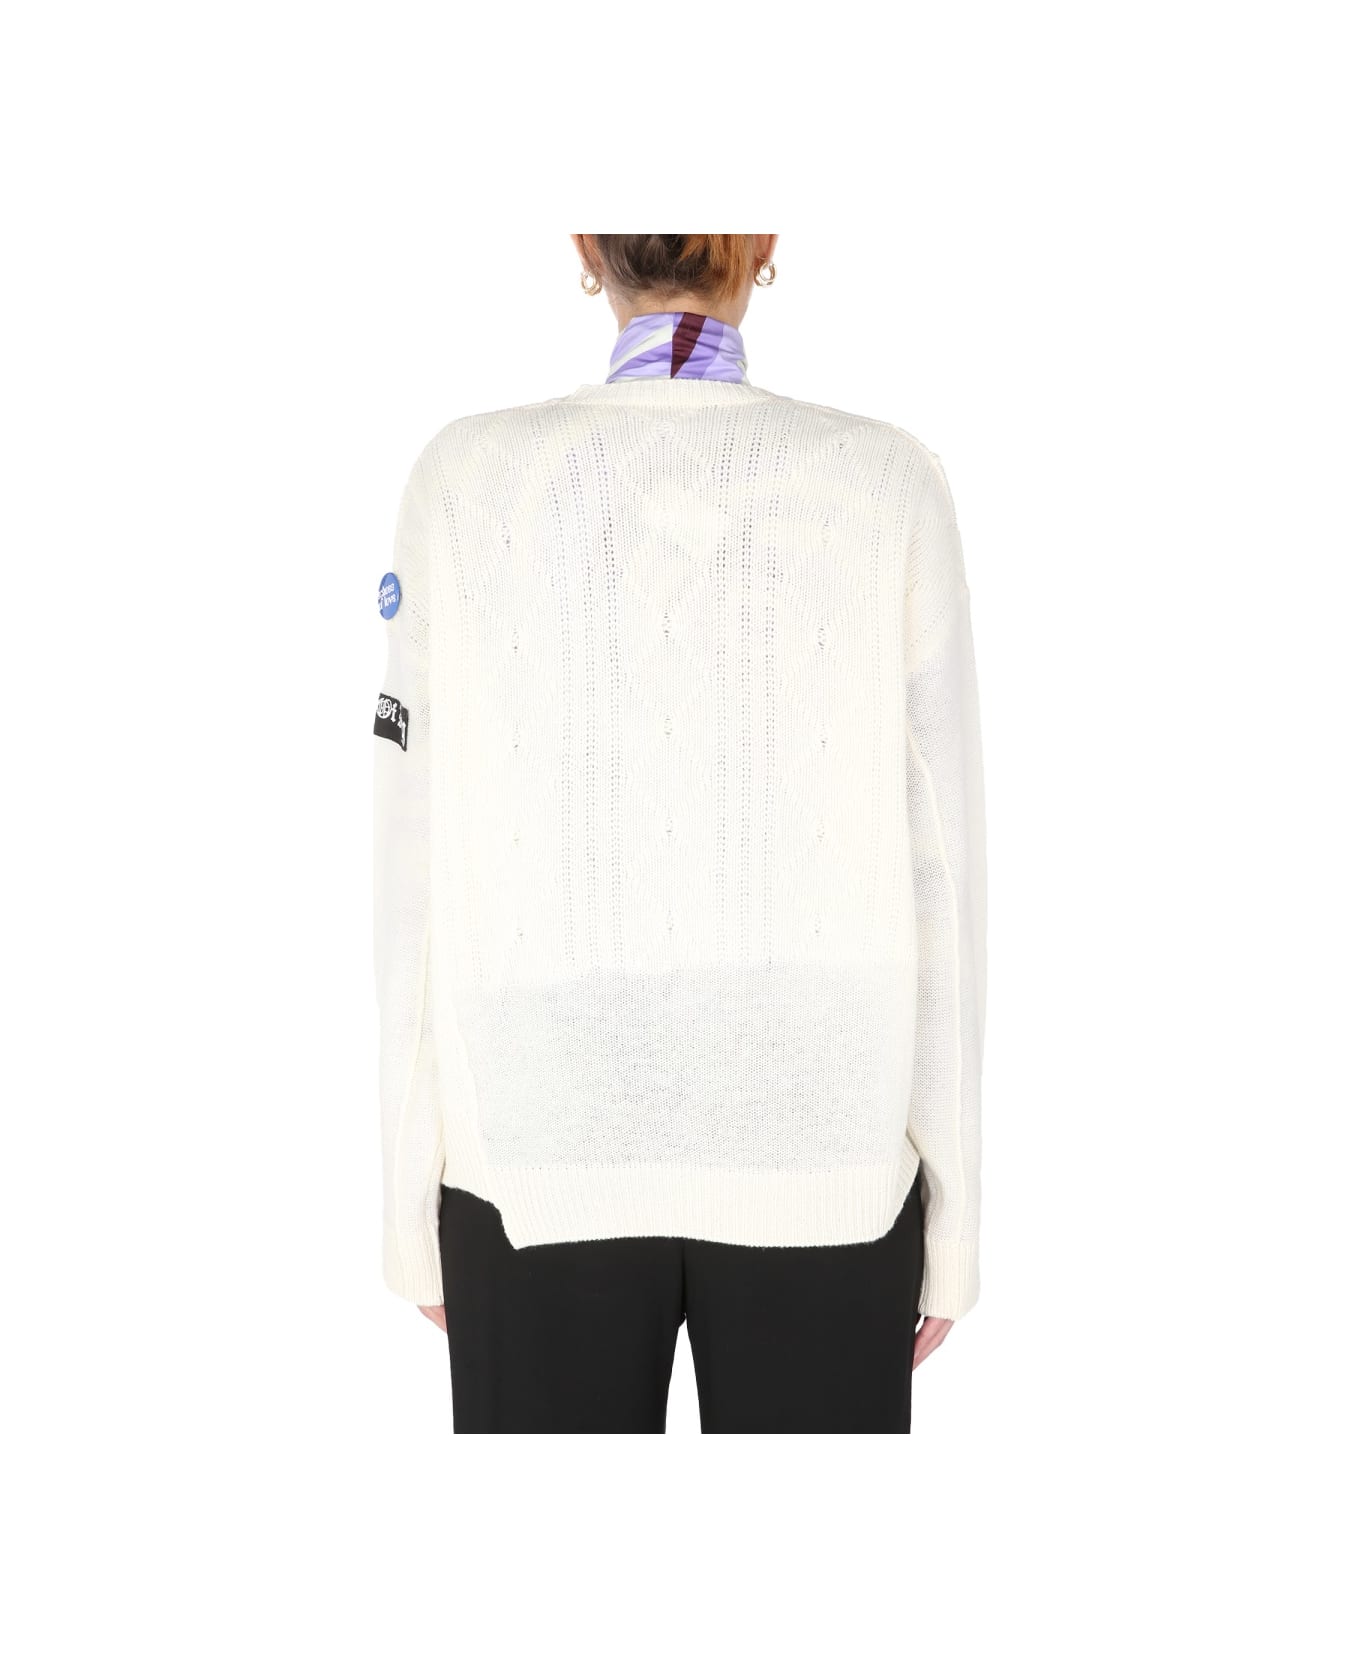 Raf Simons Crew Neck Sweater - WHITE